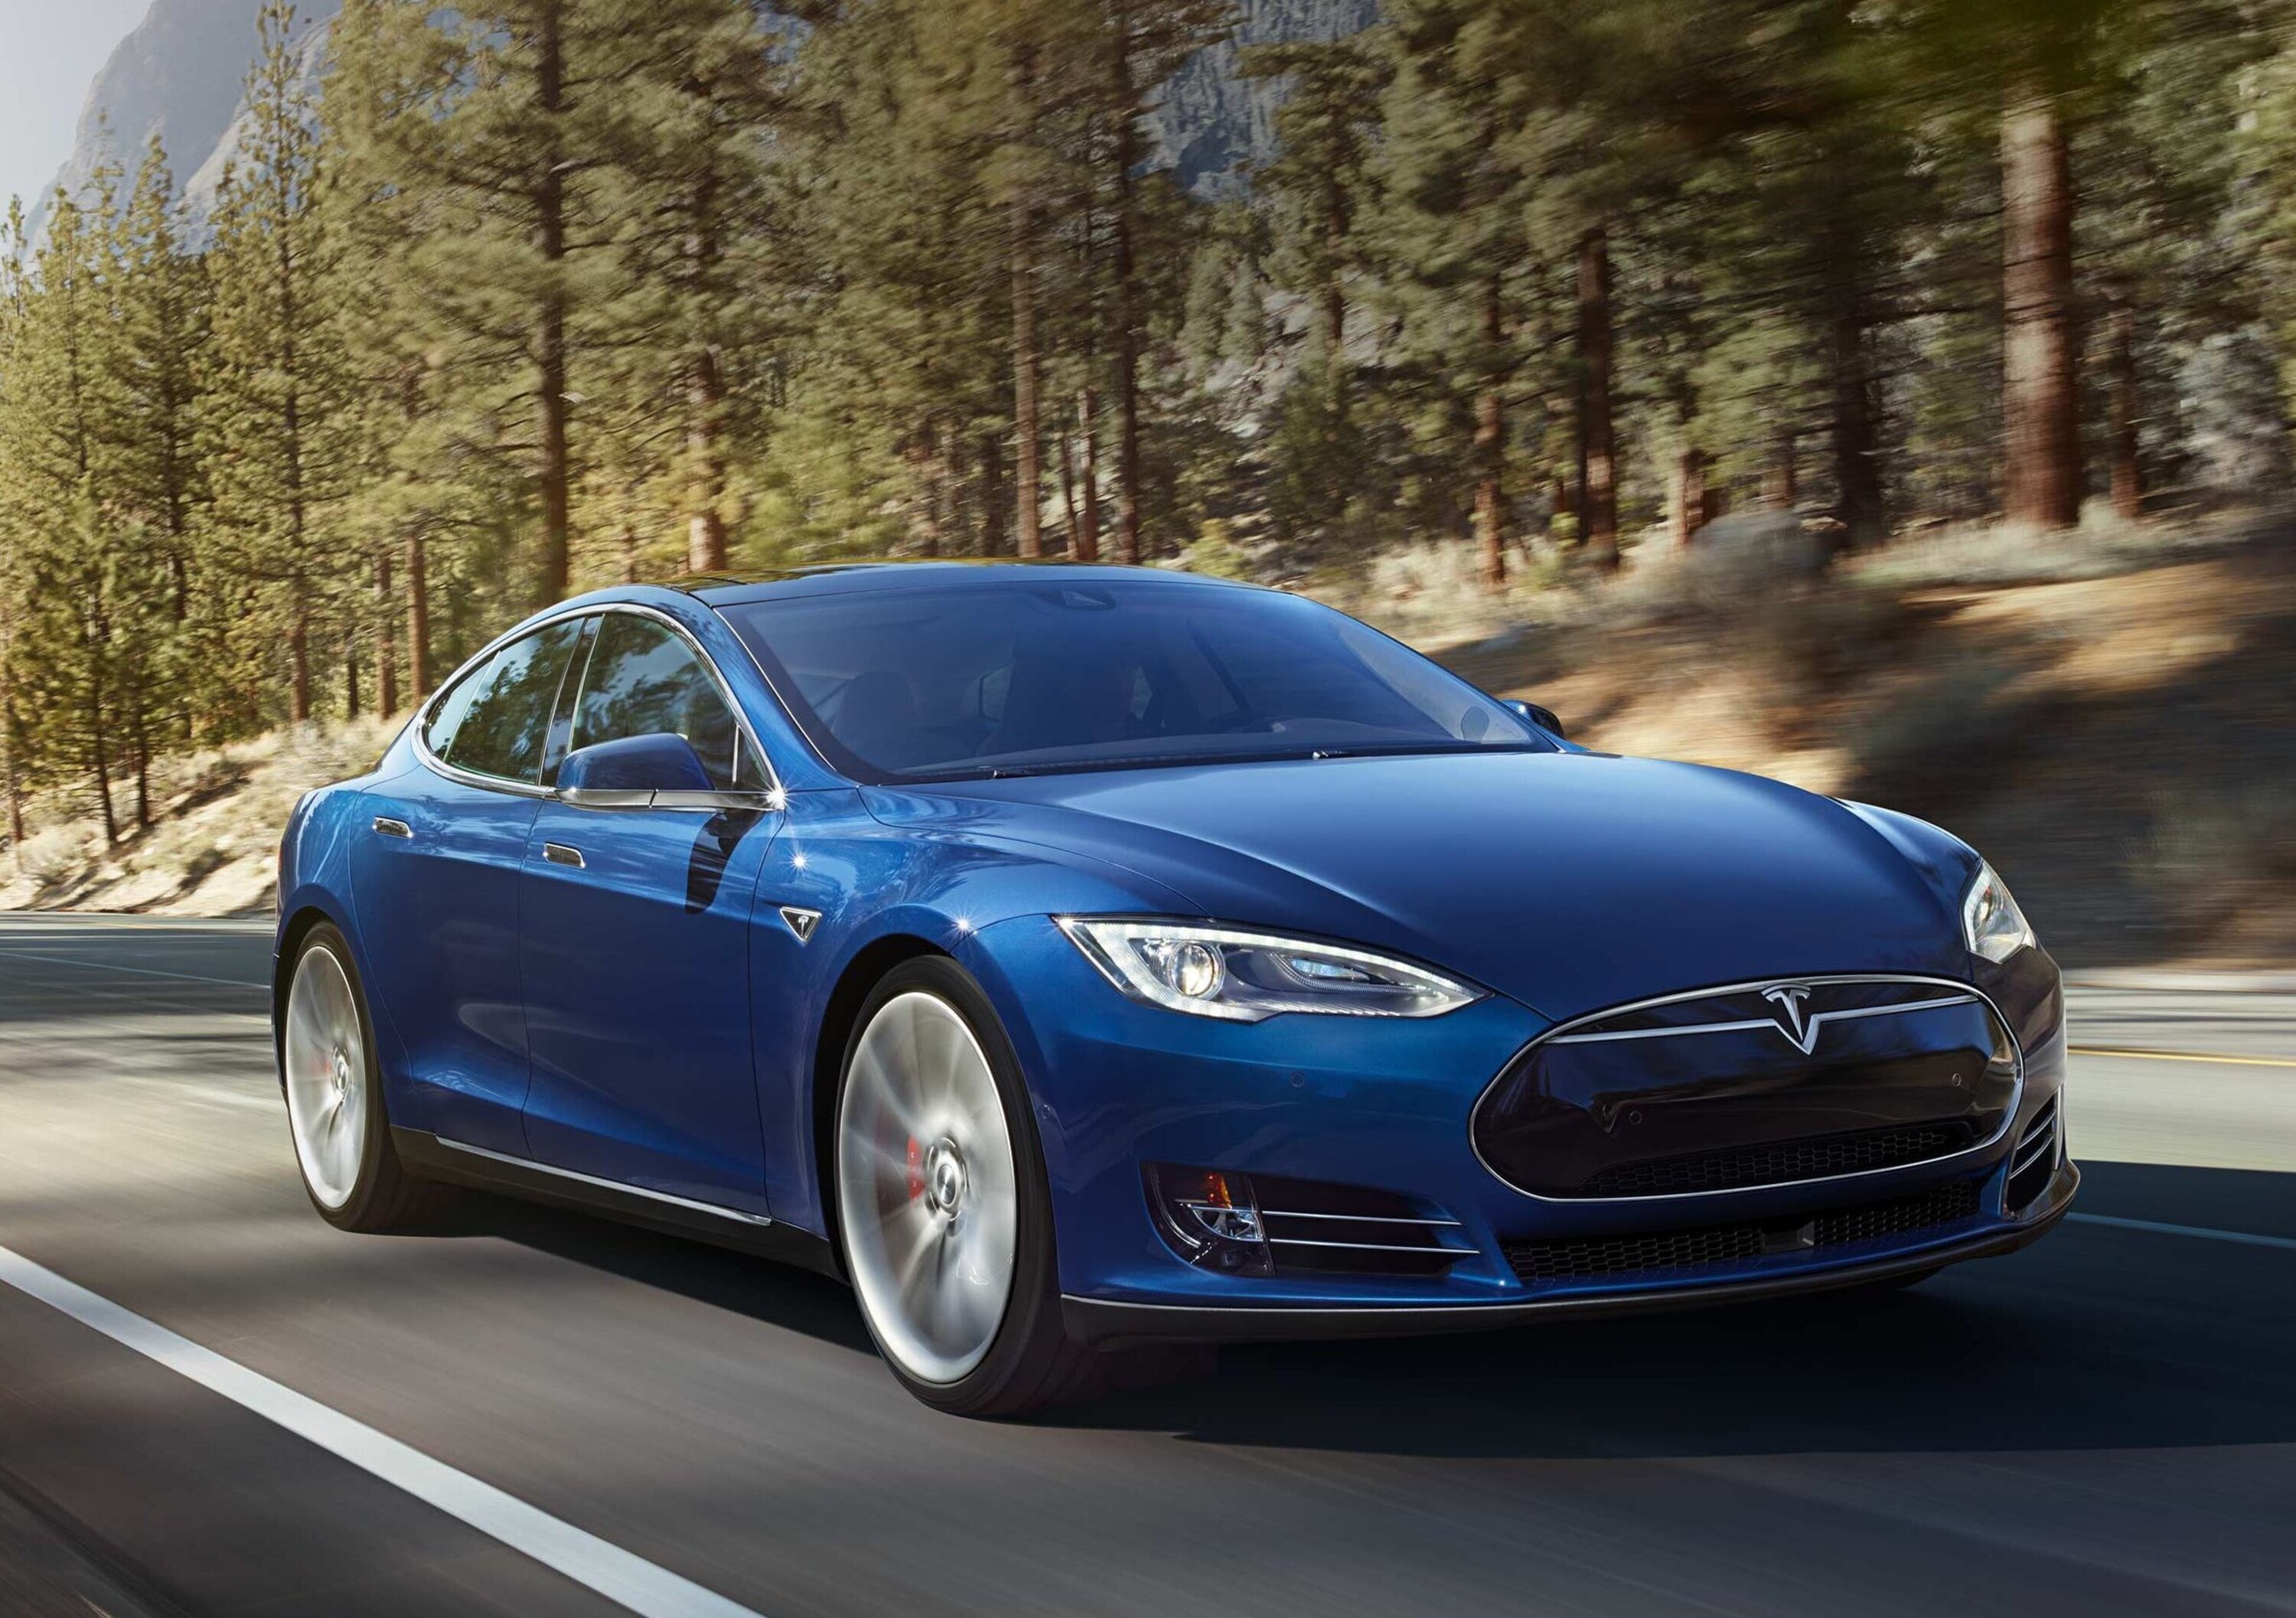 Auto elettriche: negli USA, Tesla S e Kia Niro al top